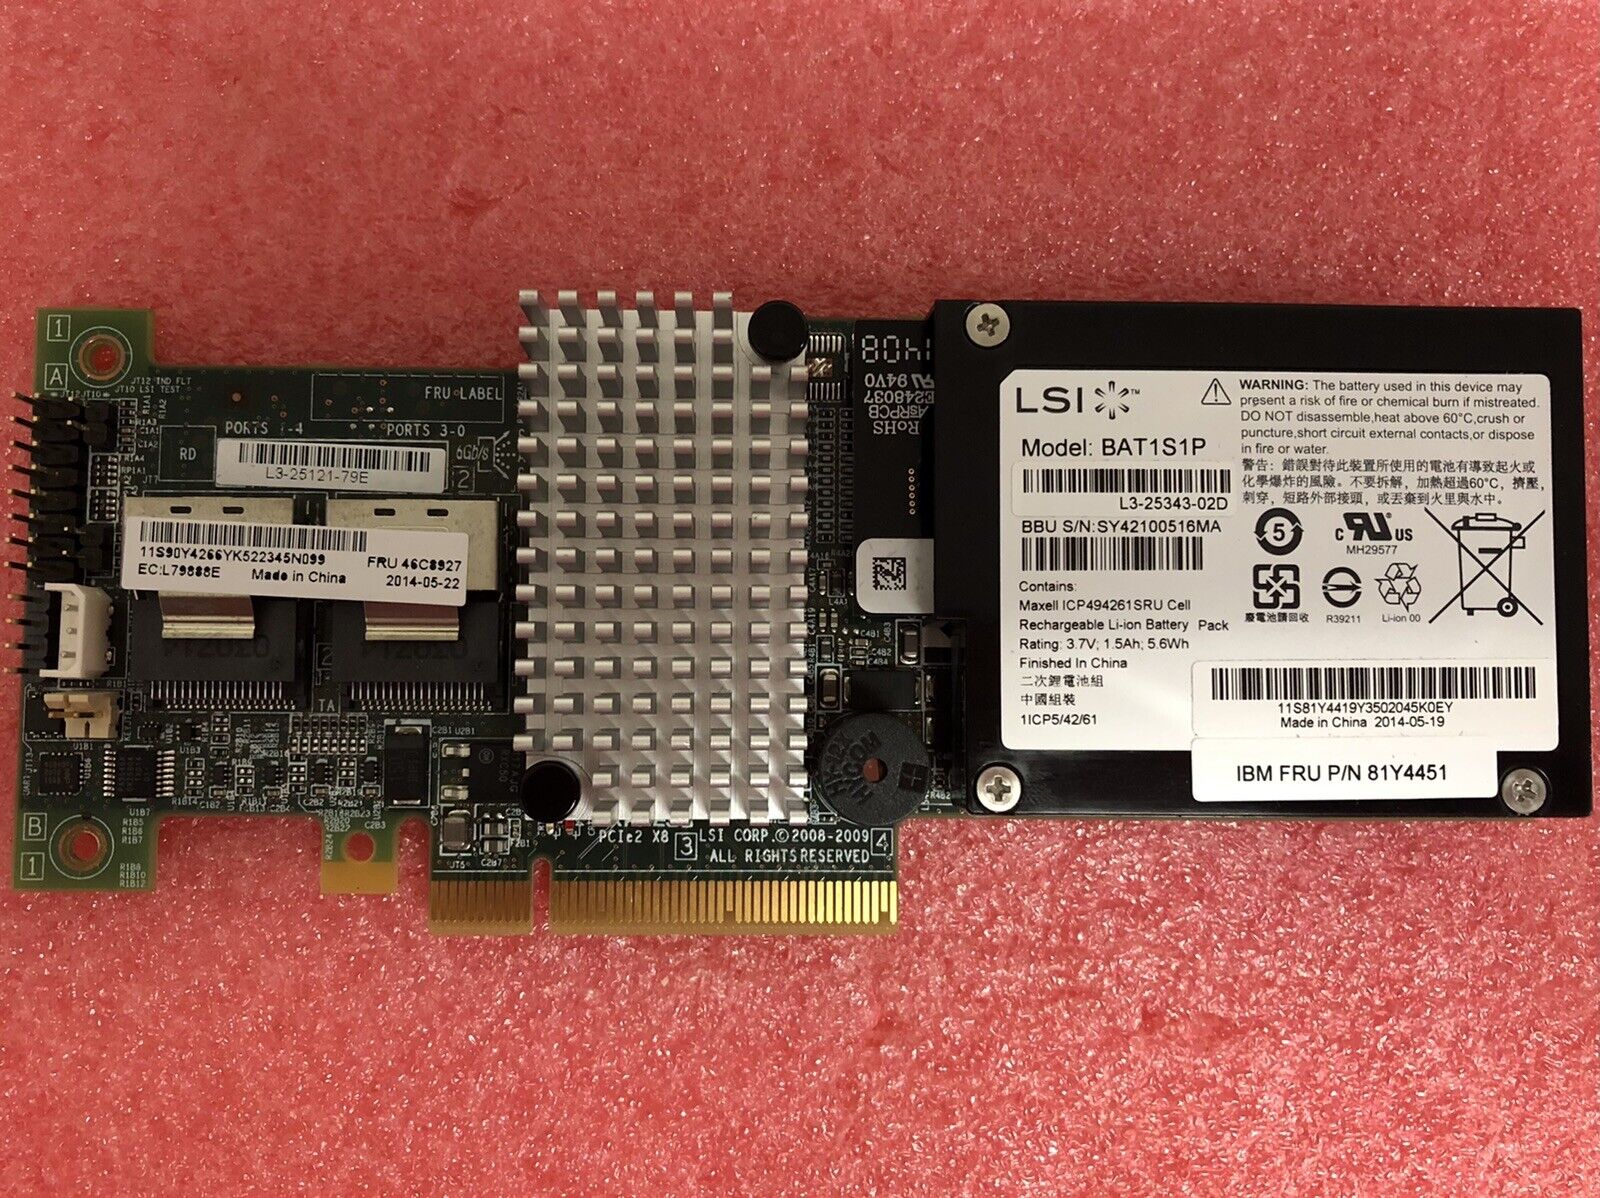 IBM LSI MegaRAID L3-25121-79E FRU 46C8927 SAS SATA CONTROLLER Card W/ BATTERY